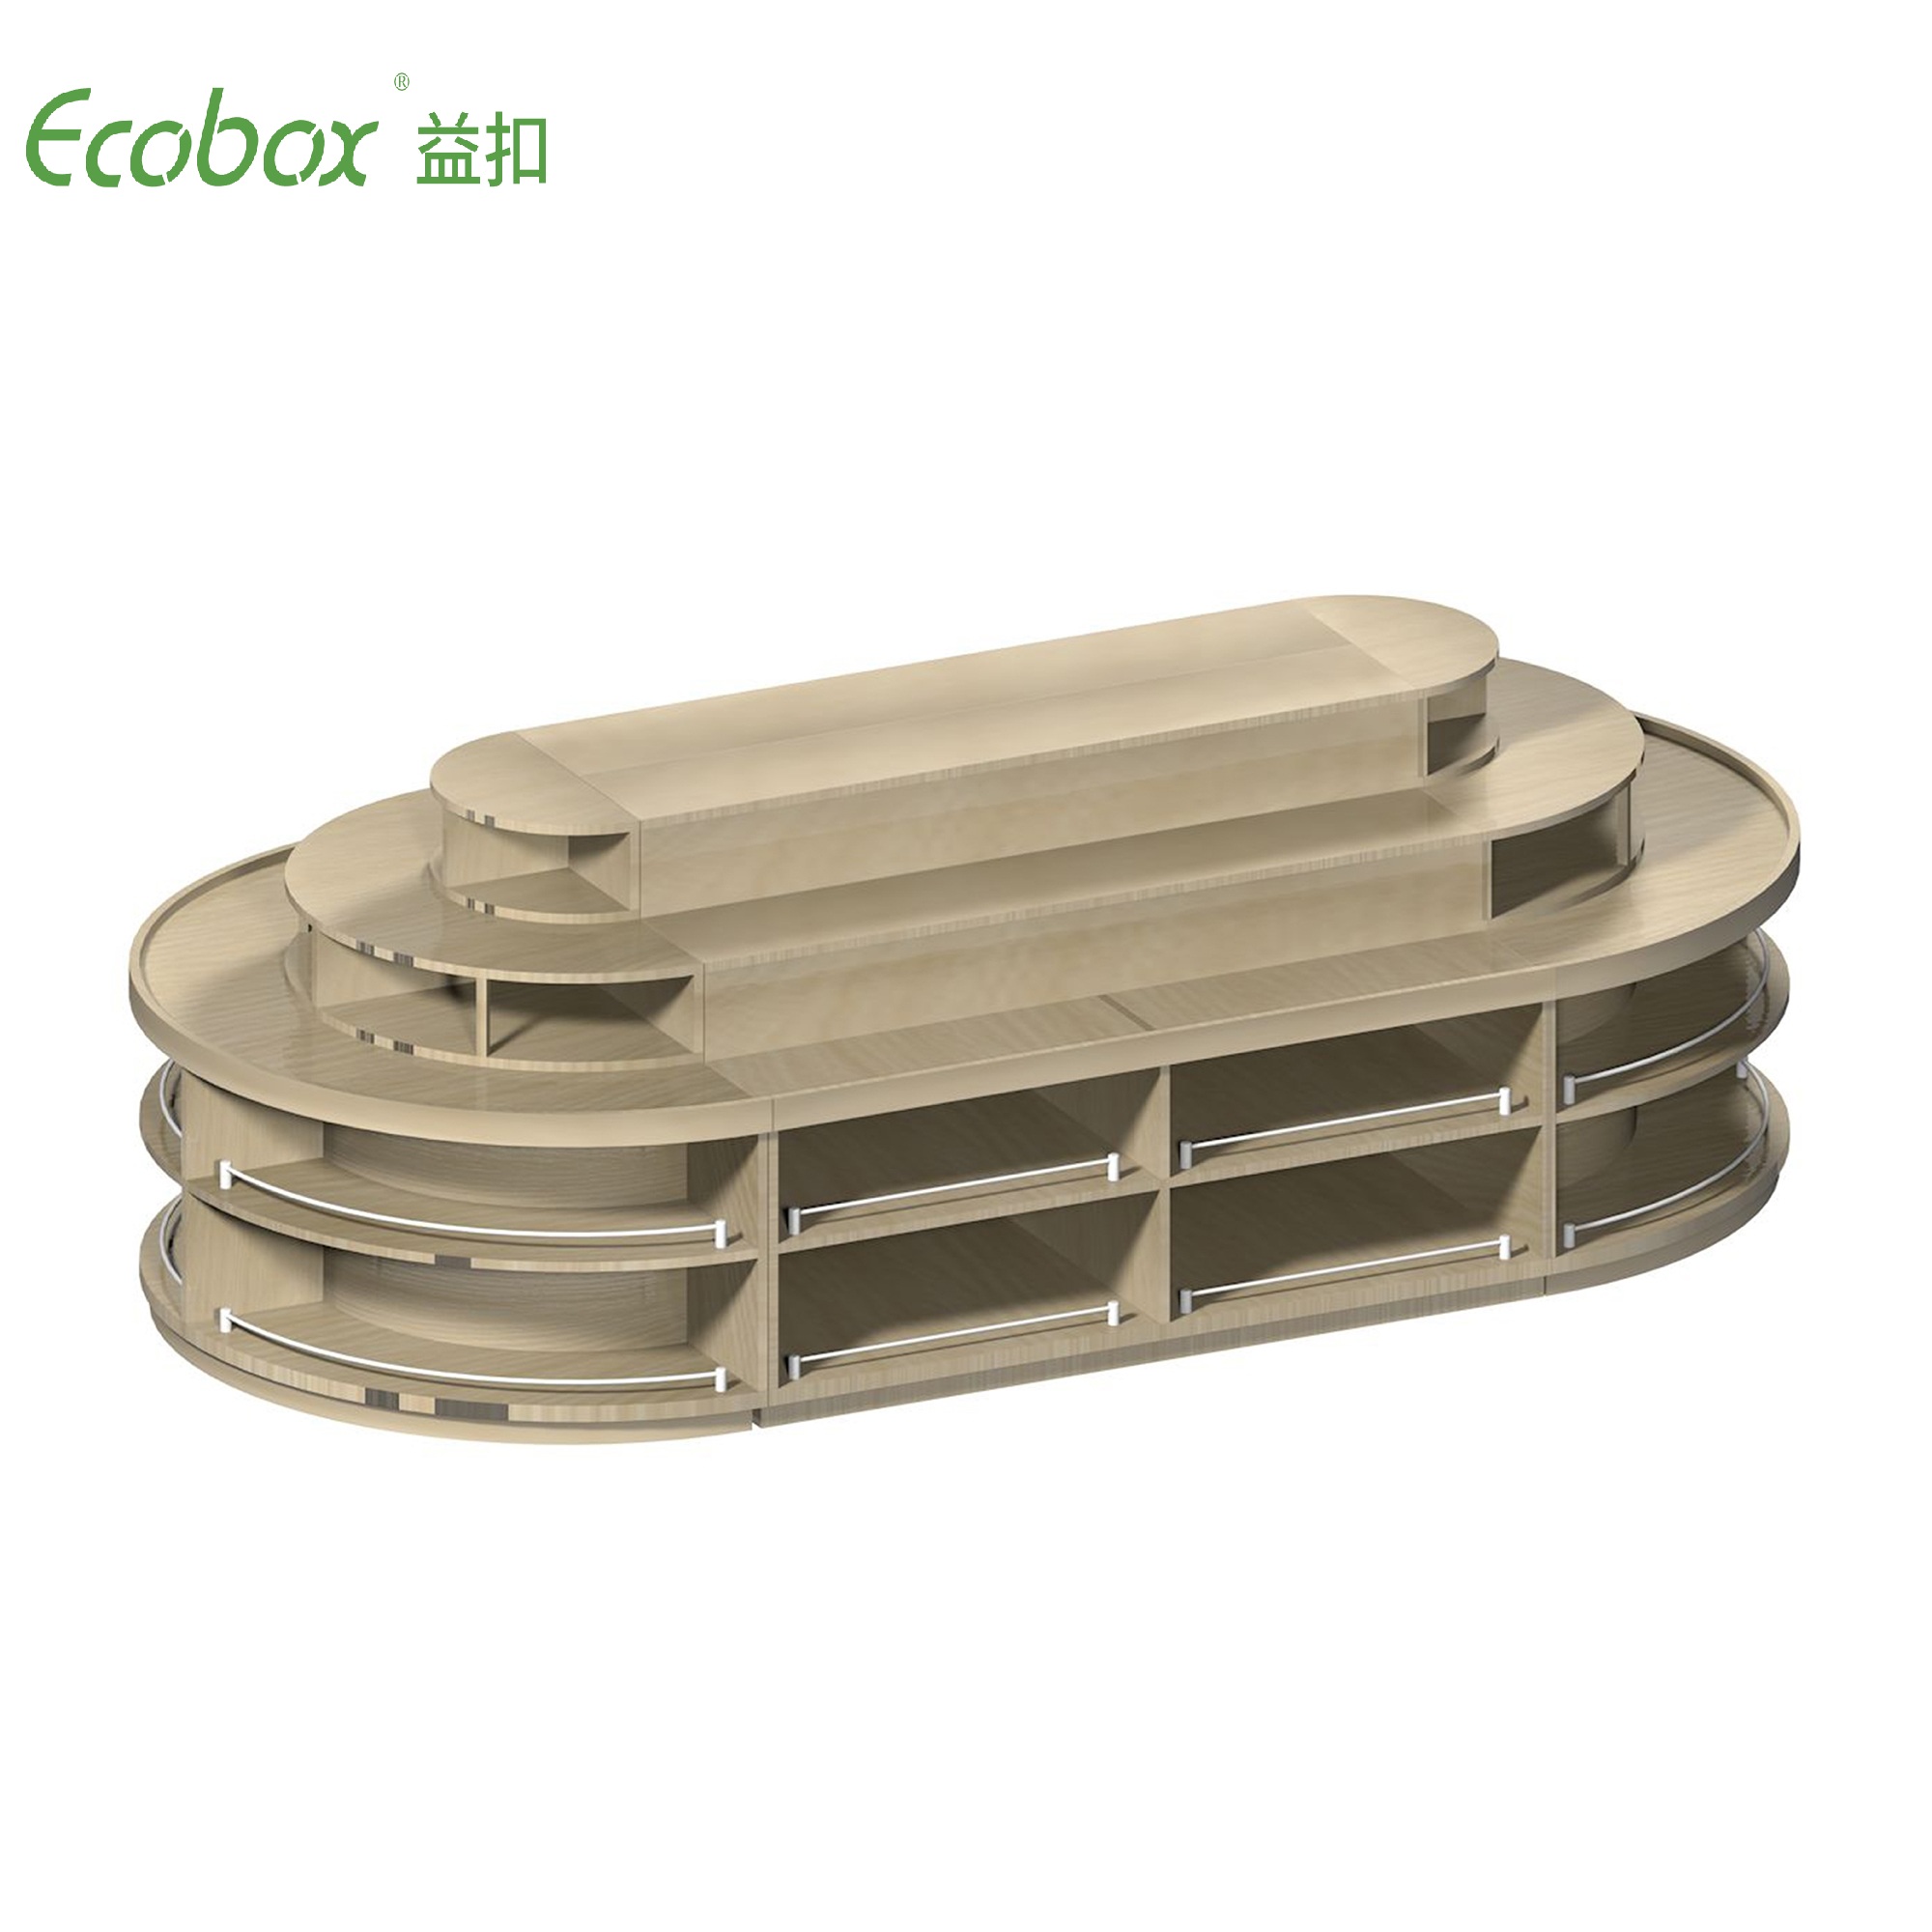 Étagère ronde de la série Ecobox G001 avec présentoirs d'aliments en vrac de supermarché pour bacs en vrac Ecobox